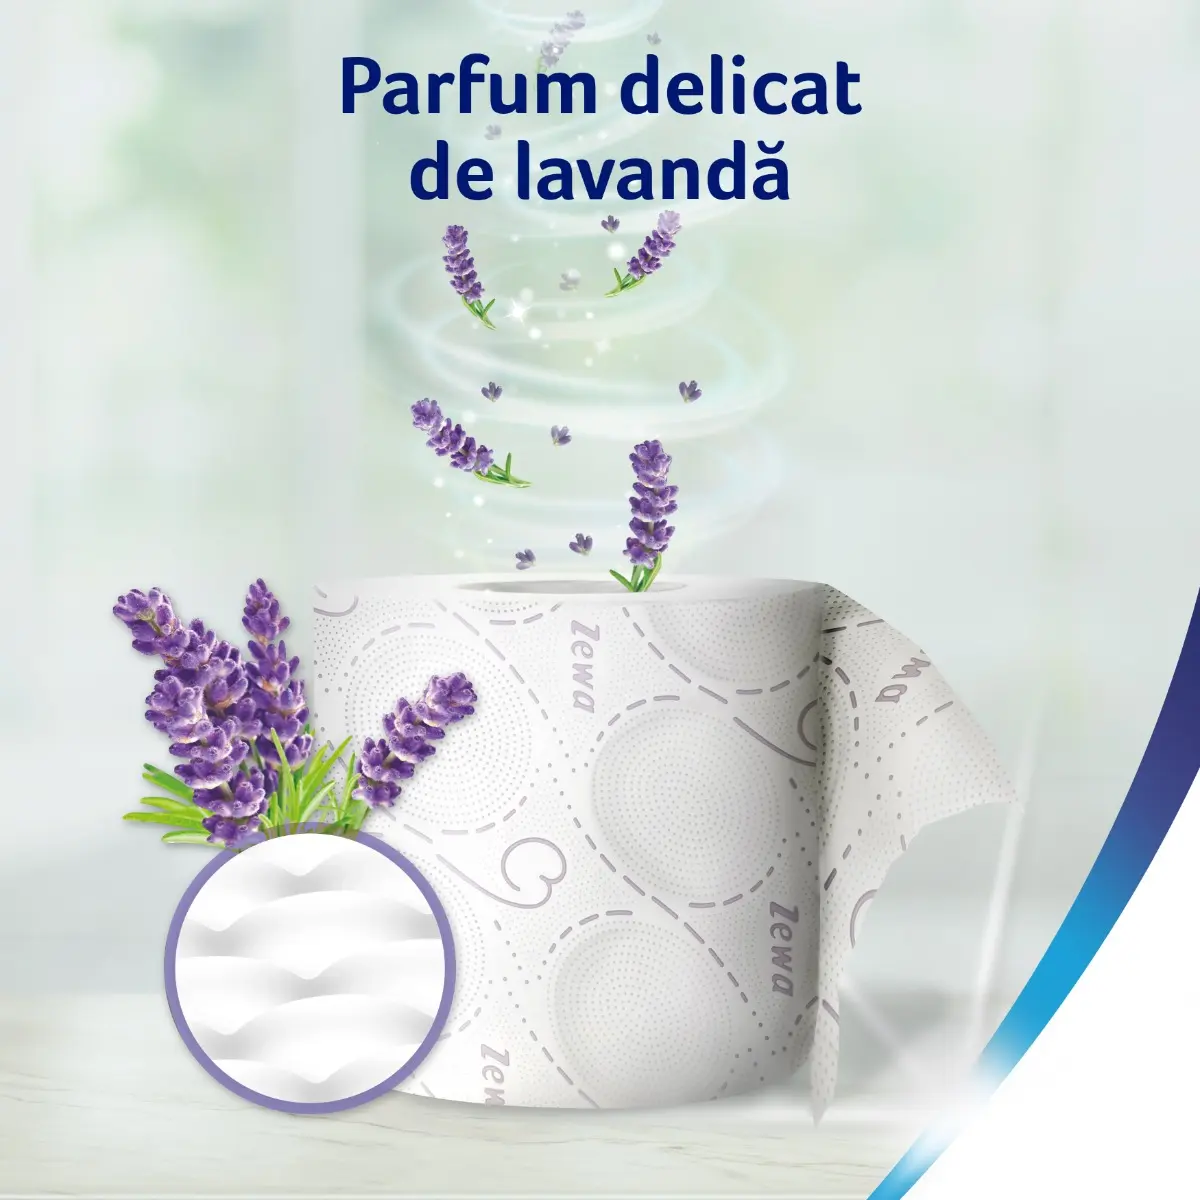 Hartie igienica Zewa Deluxe Lavender dreams, 3 straturi, 16 role